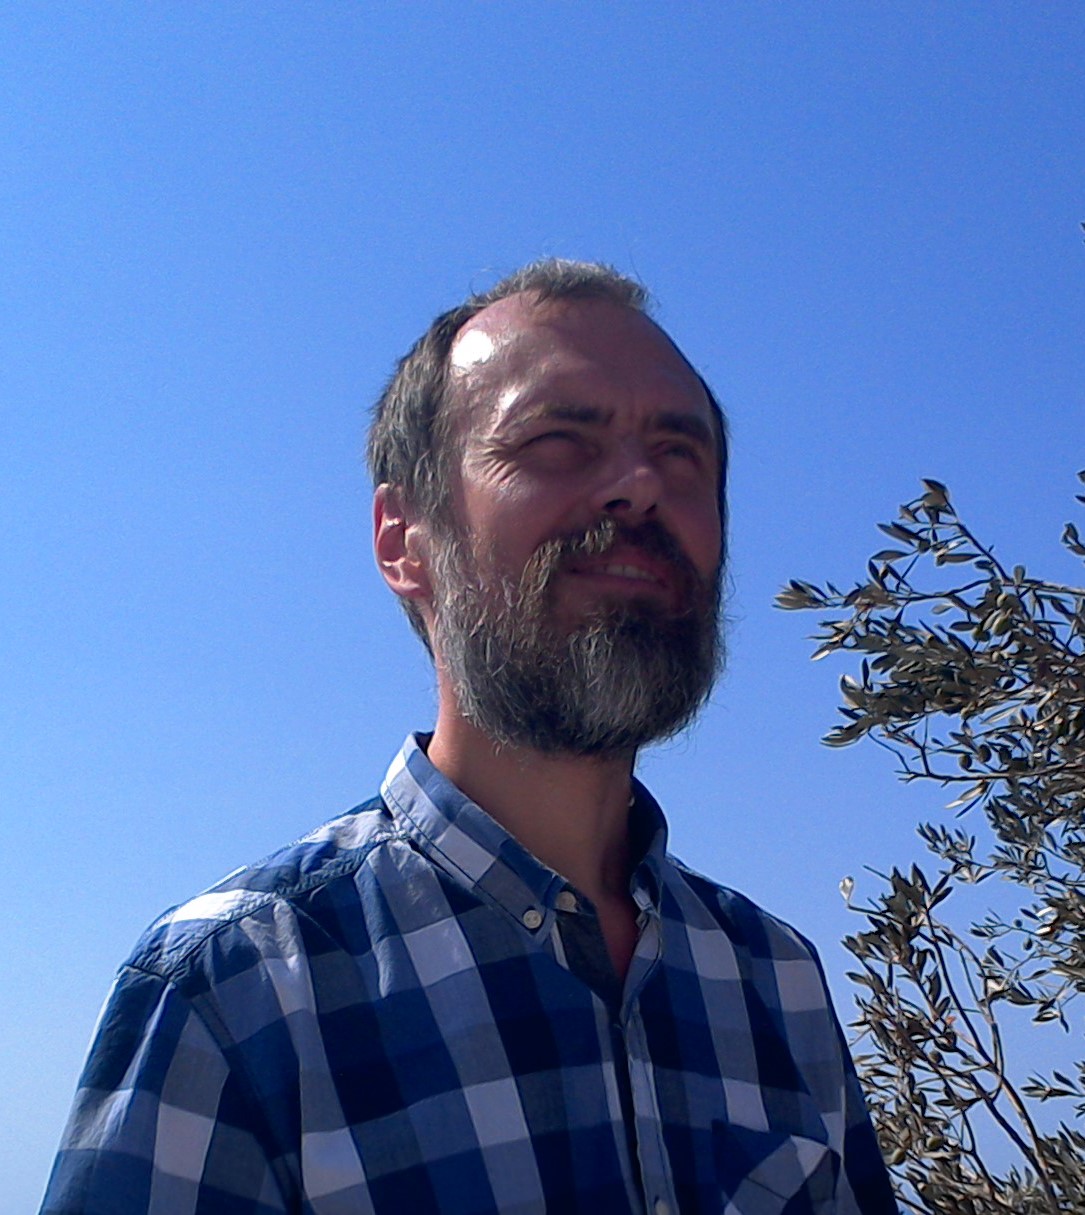 zdjęcie portretowe profesora Józefa Kuffla na niebieskim tle